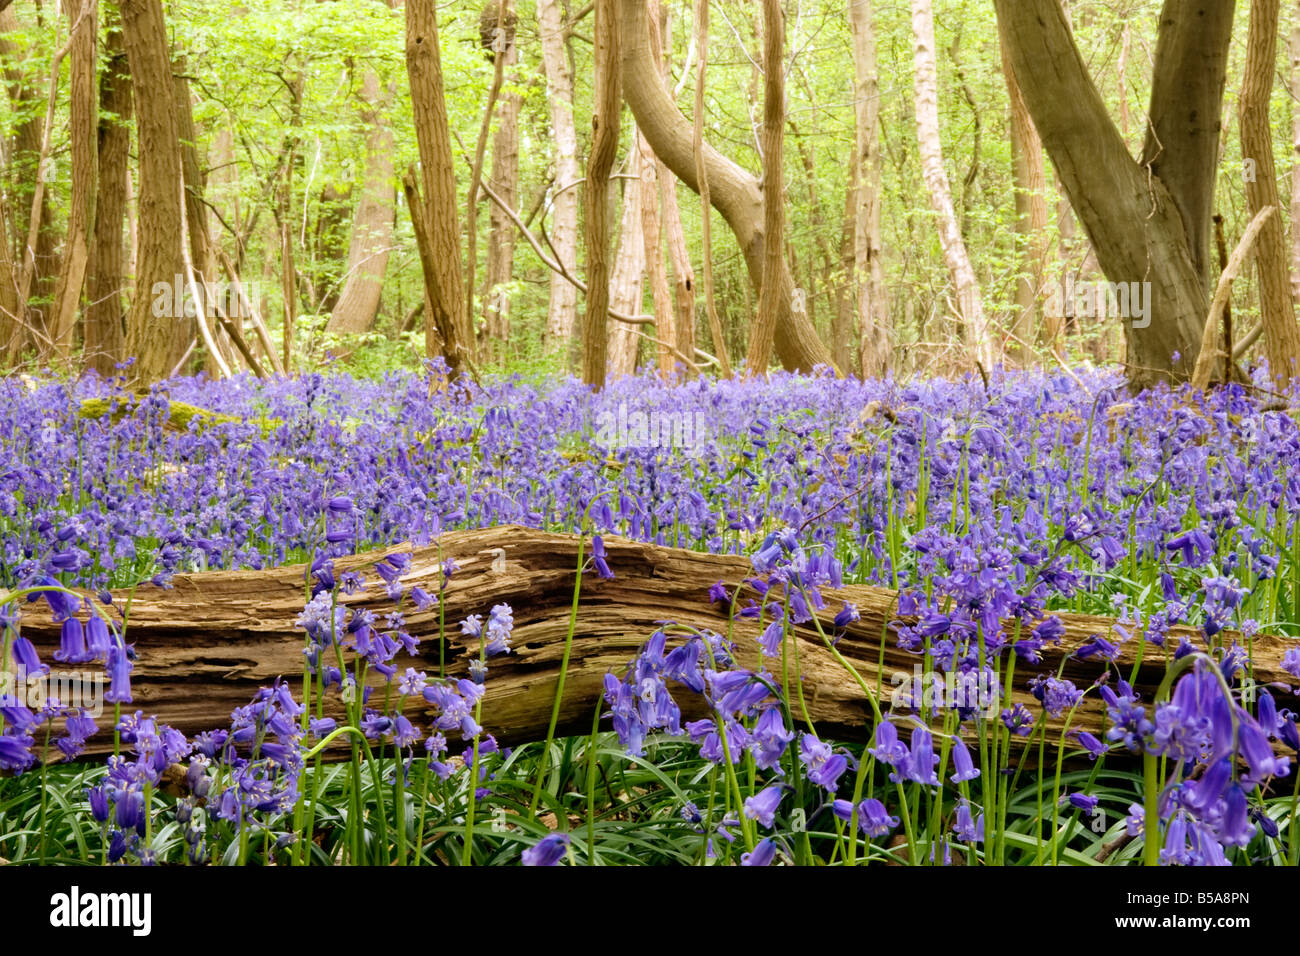 Un champ de jacinthes au printemps dans une forêt près de Rouen Haute-Normandie France Banque D'Images